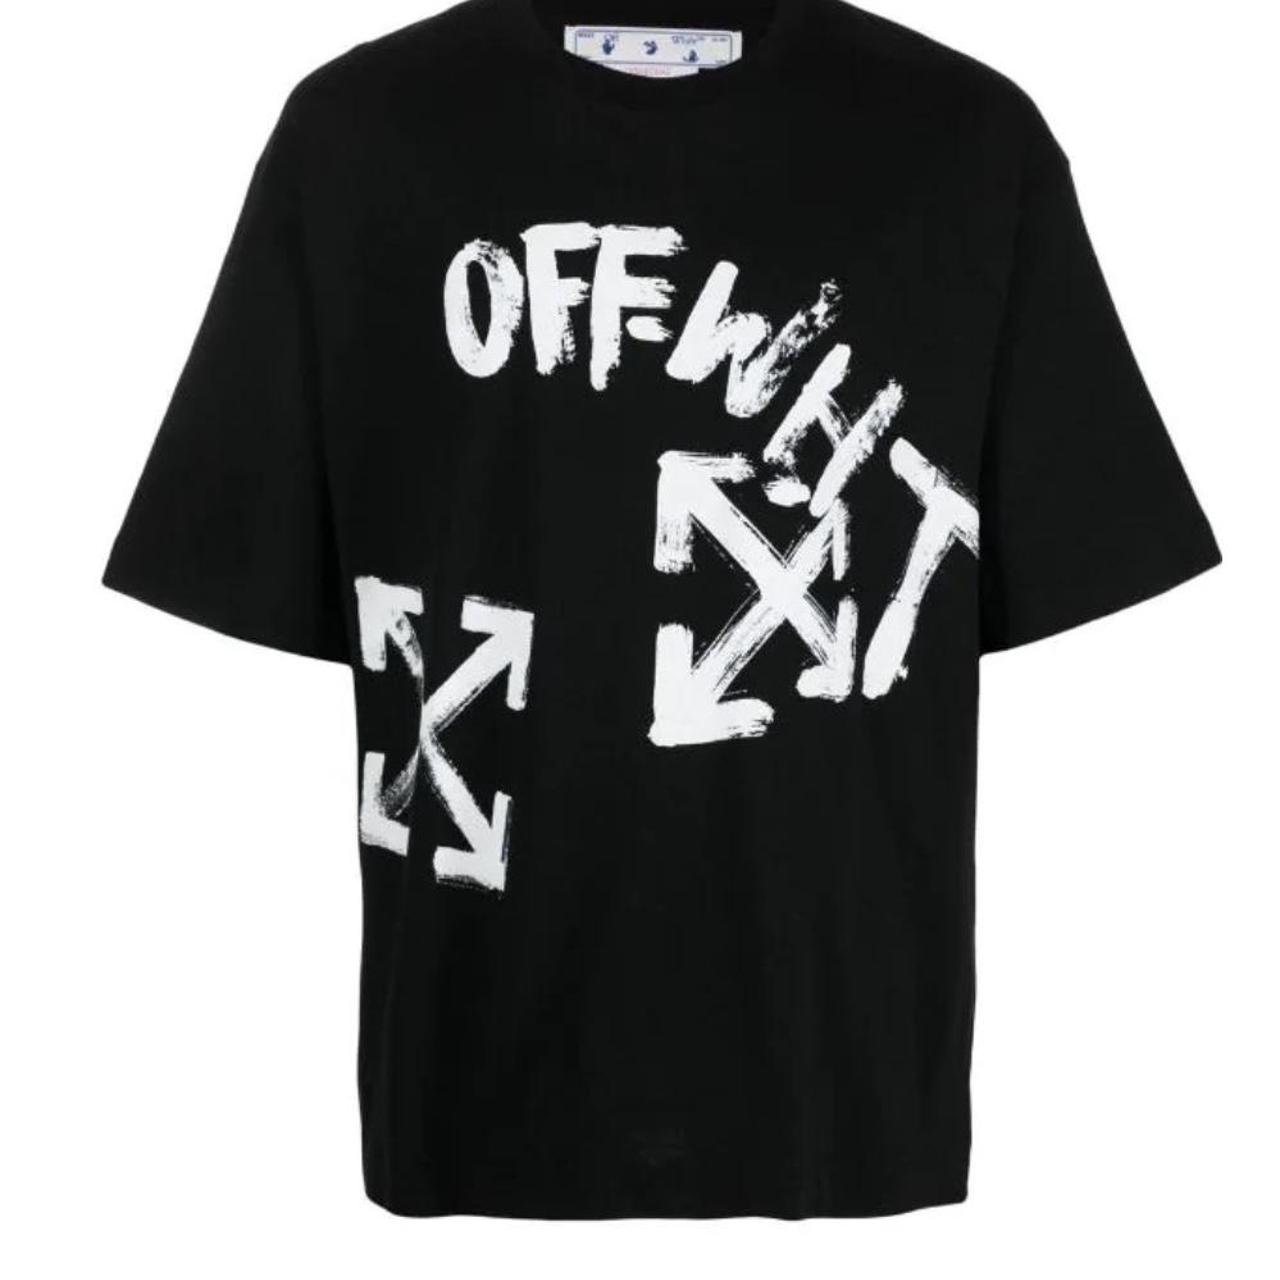 Off-White Men's Black and White T-shirt | Depop